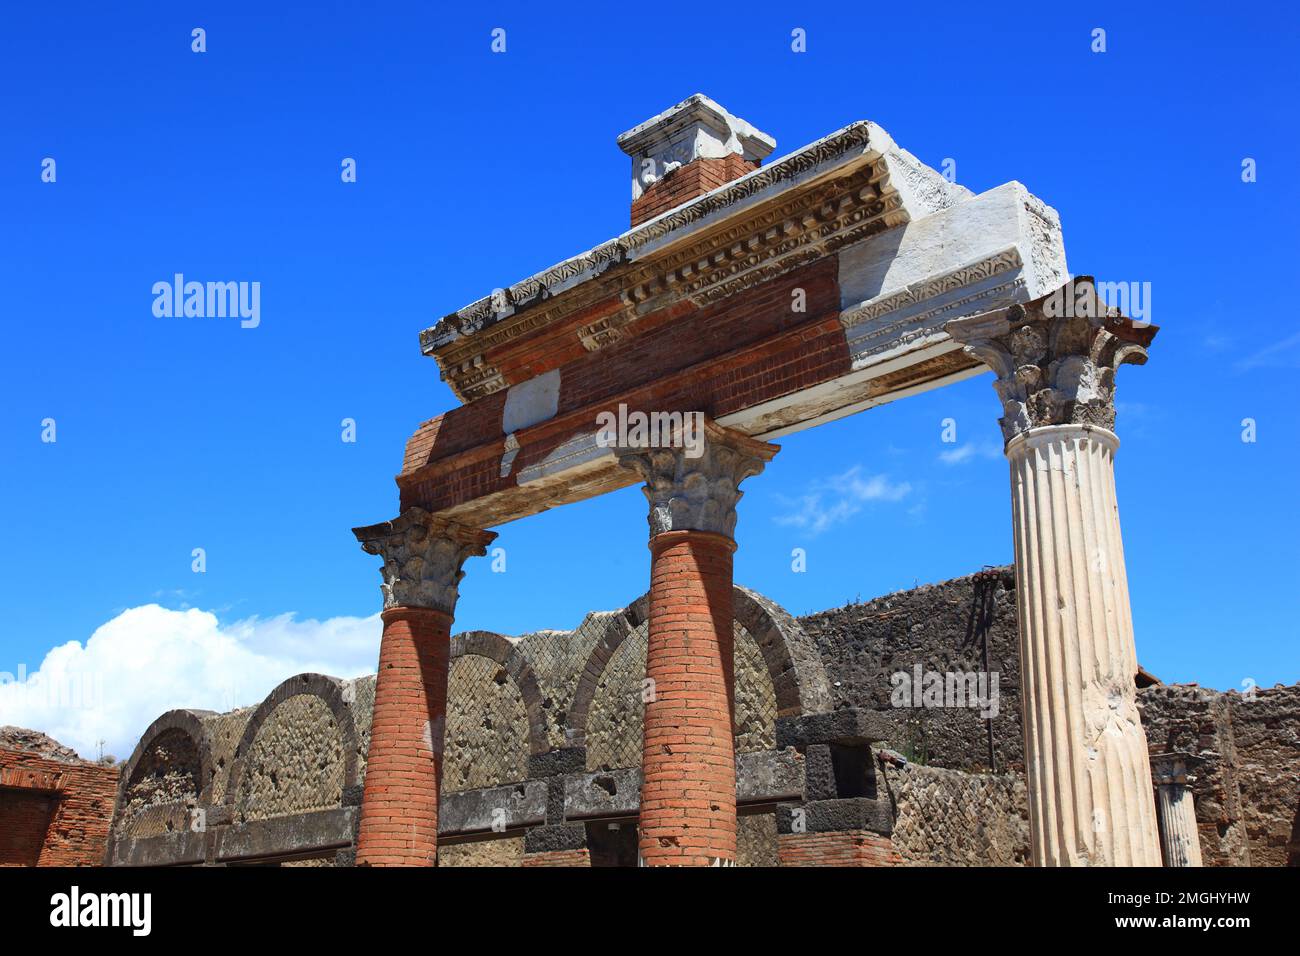 Das Forum, Pompeji, antike Stadt in Kampanien am Golf von Neapel, beim Ausbruch des Vesuvs im Jahr 79 n. Chr. verschüttet, Italien Stock Photo